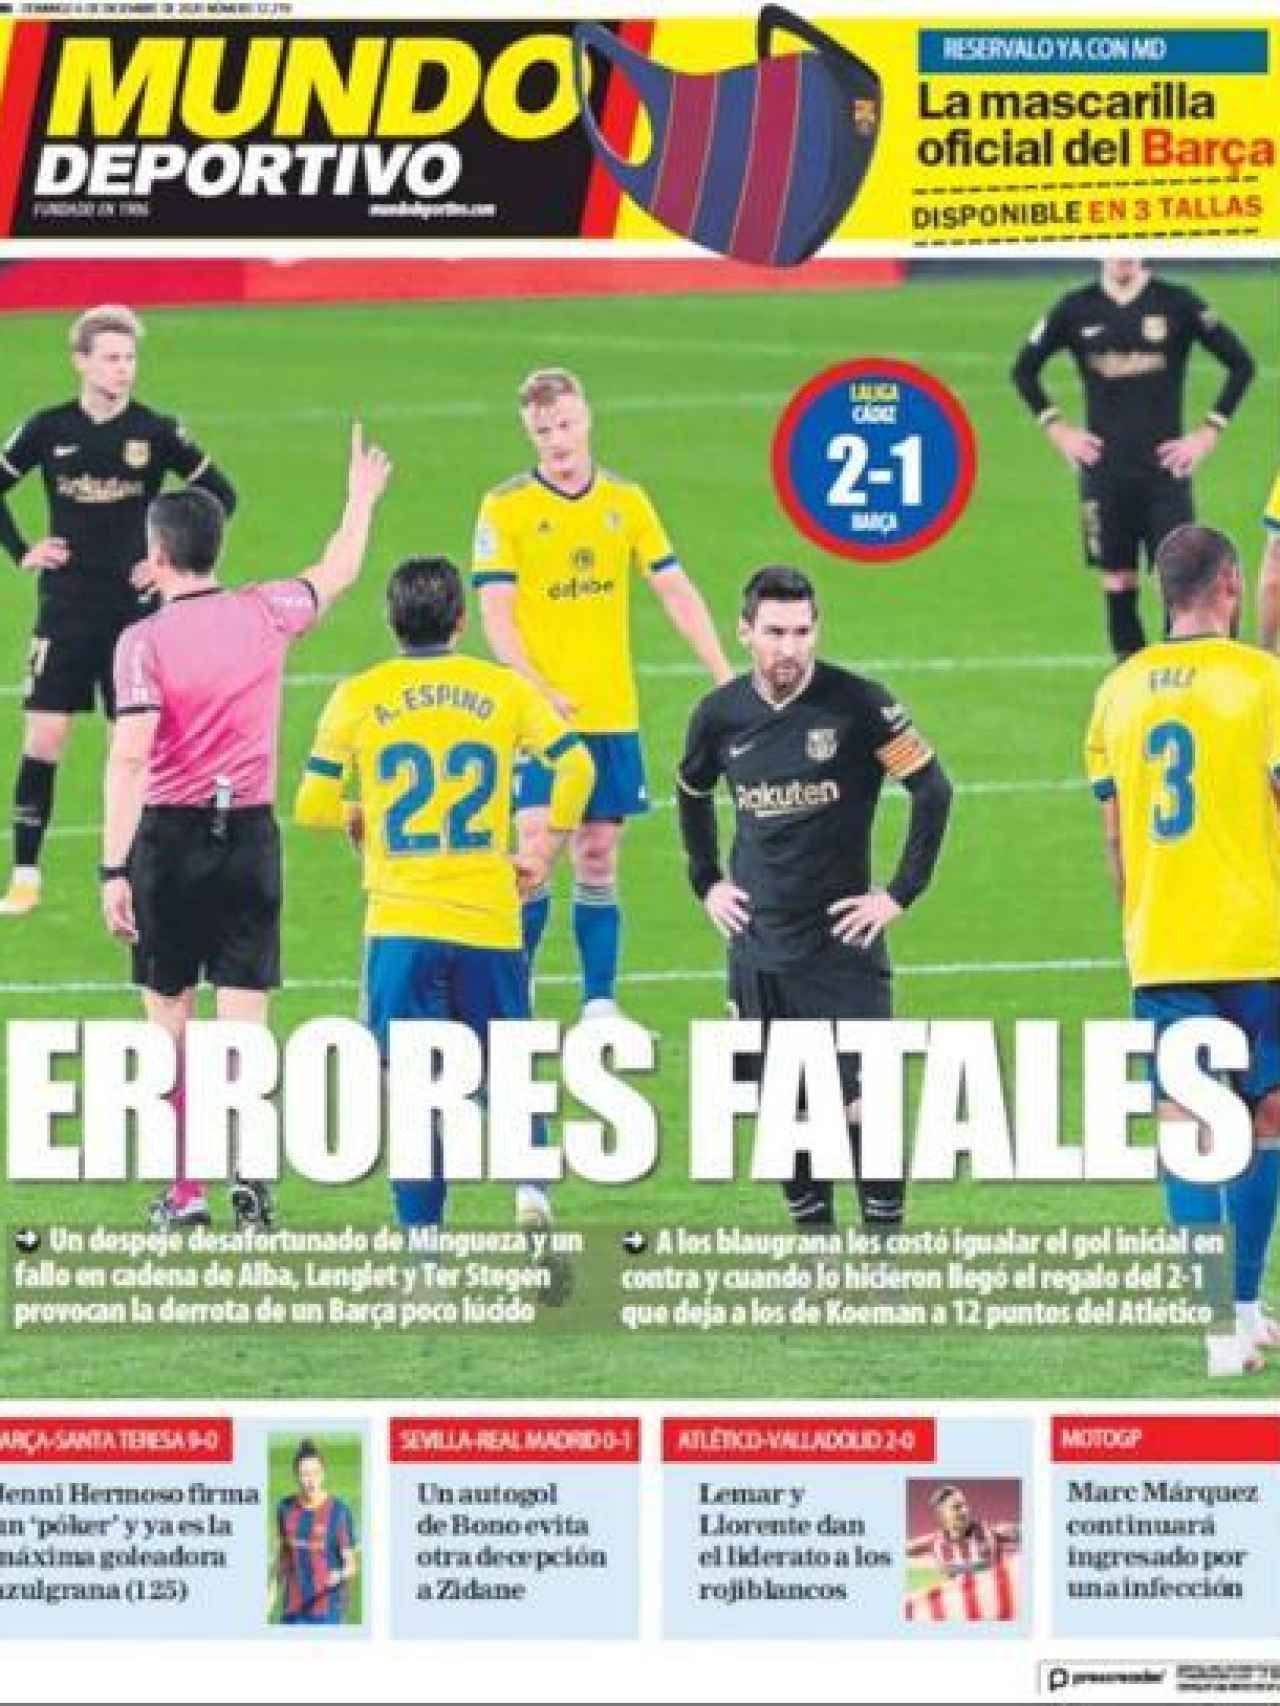 La portada del diario Mundo Deportivo (06/12/2020)